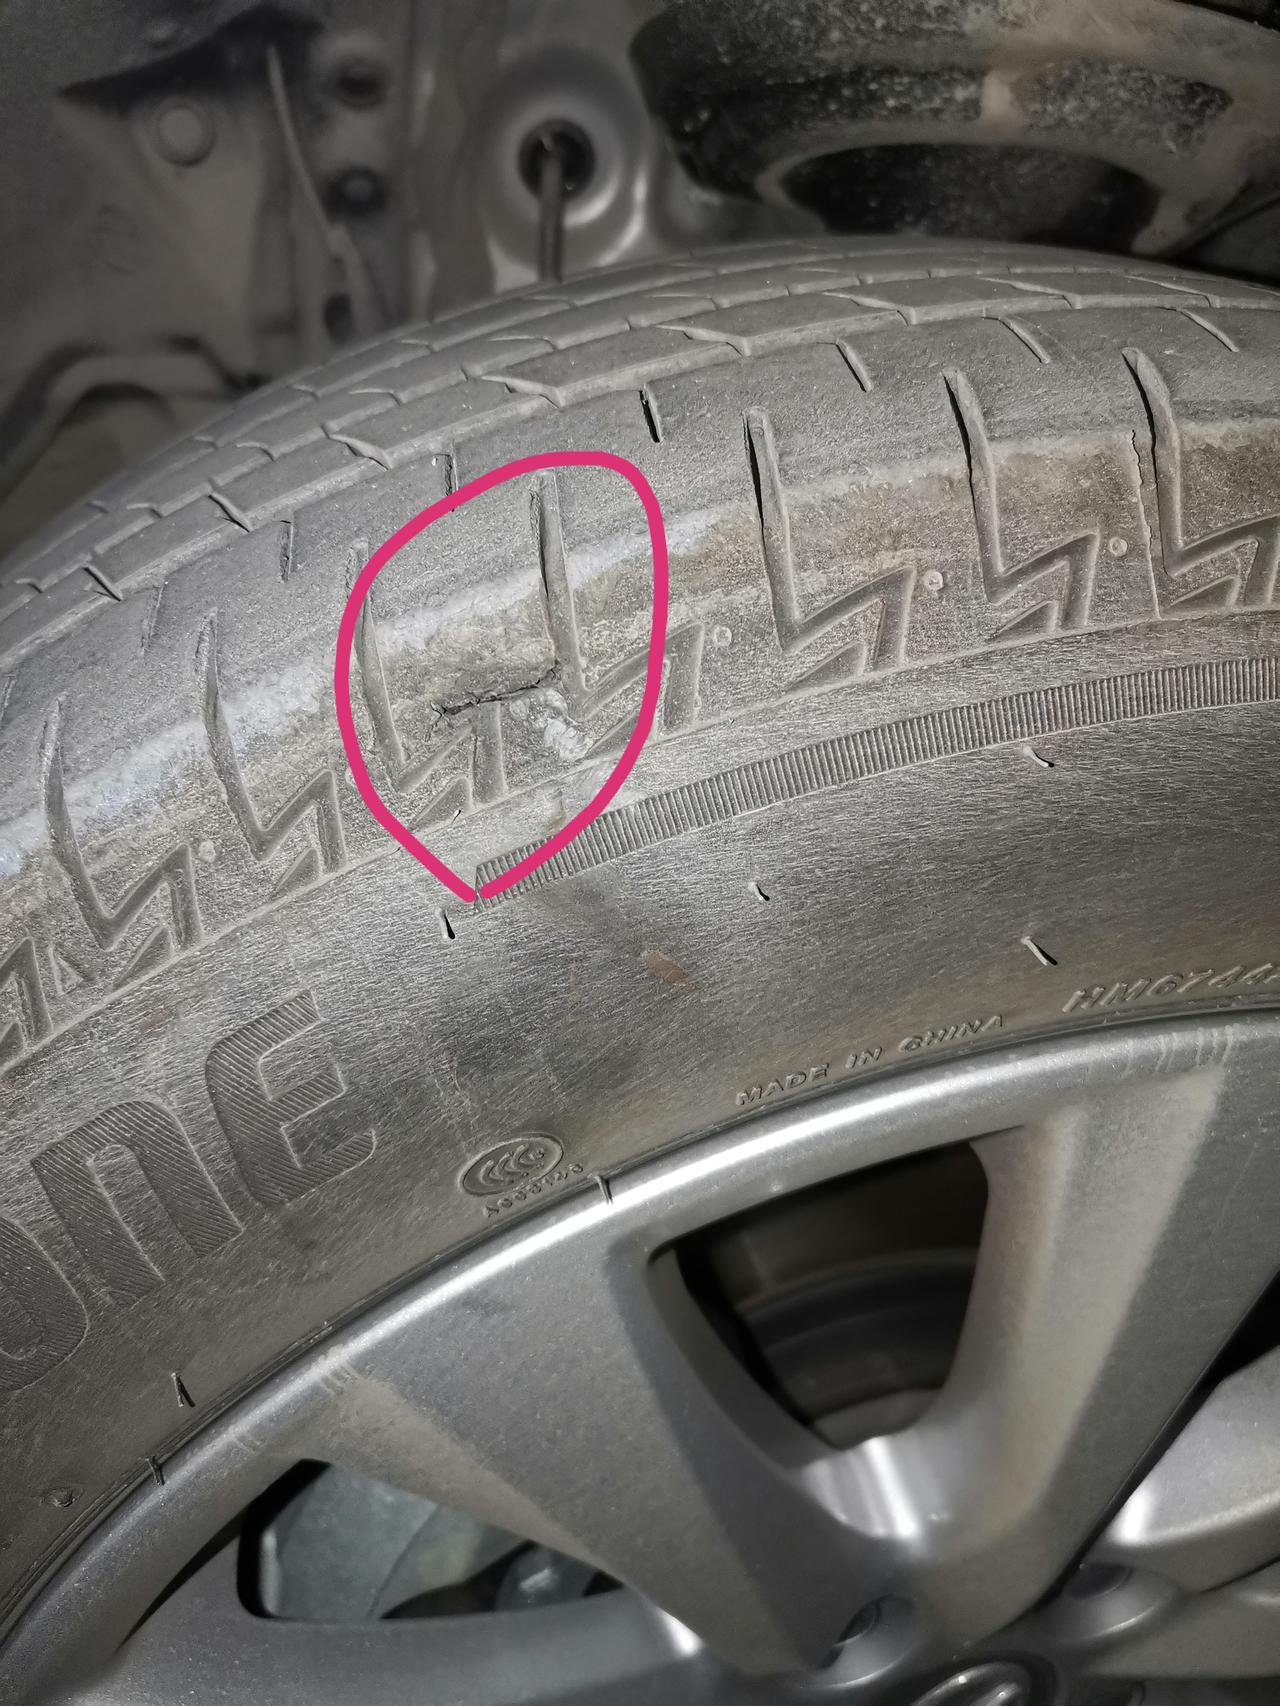 丰田凯美瑞 新车还没两月，发现左前胎被划了一道口子，然后又继续跑了几天通勤了。不知道这个要不要紧？帮看看。就是